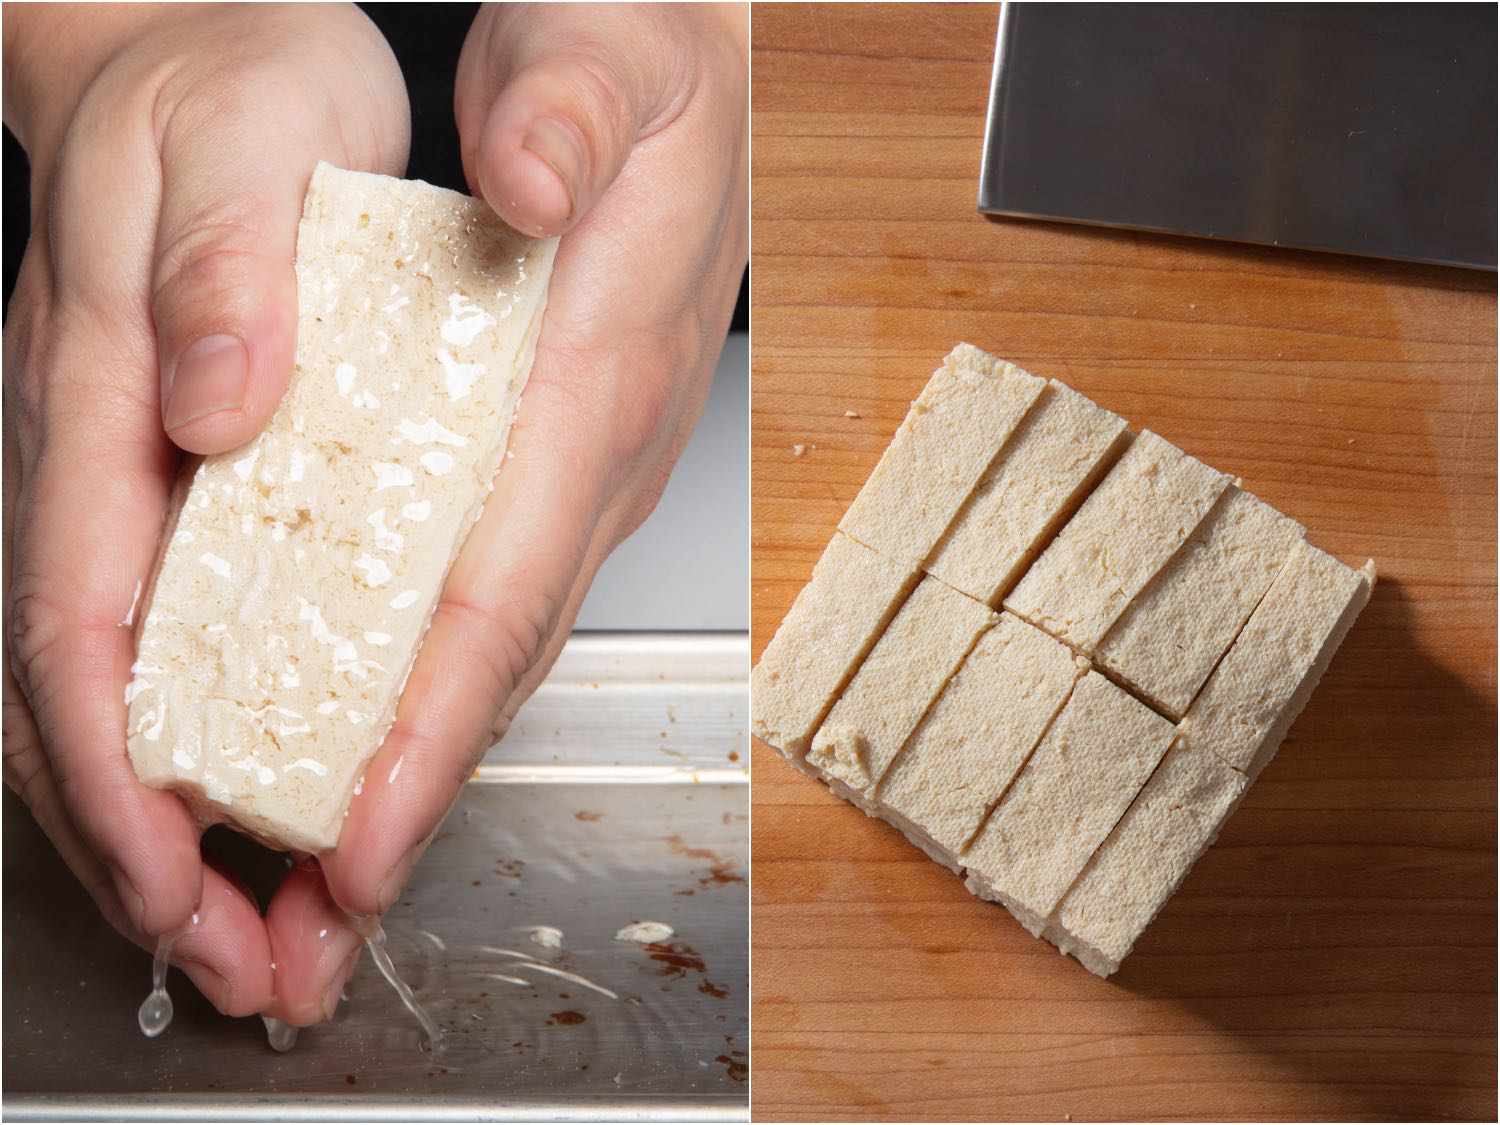 并排的照片显示了解冻的冷冻豆腐的挤压和同样大小的豆腐块